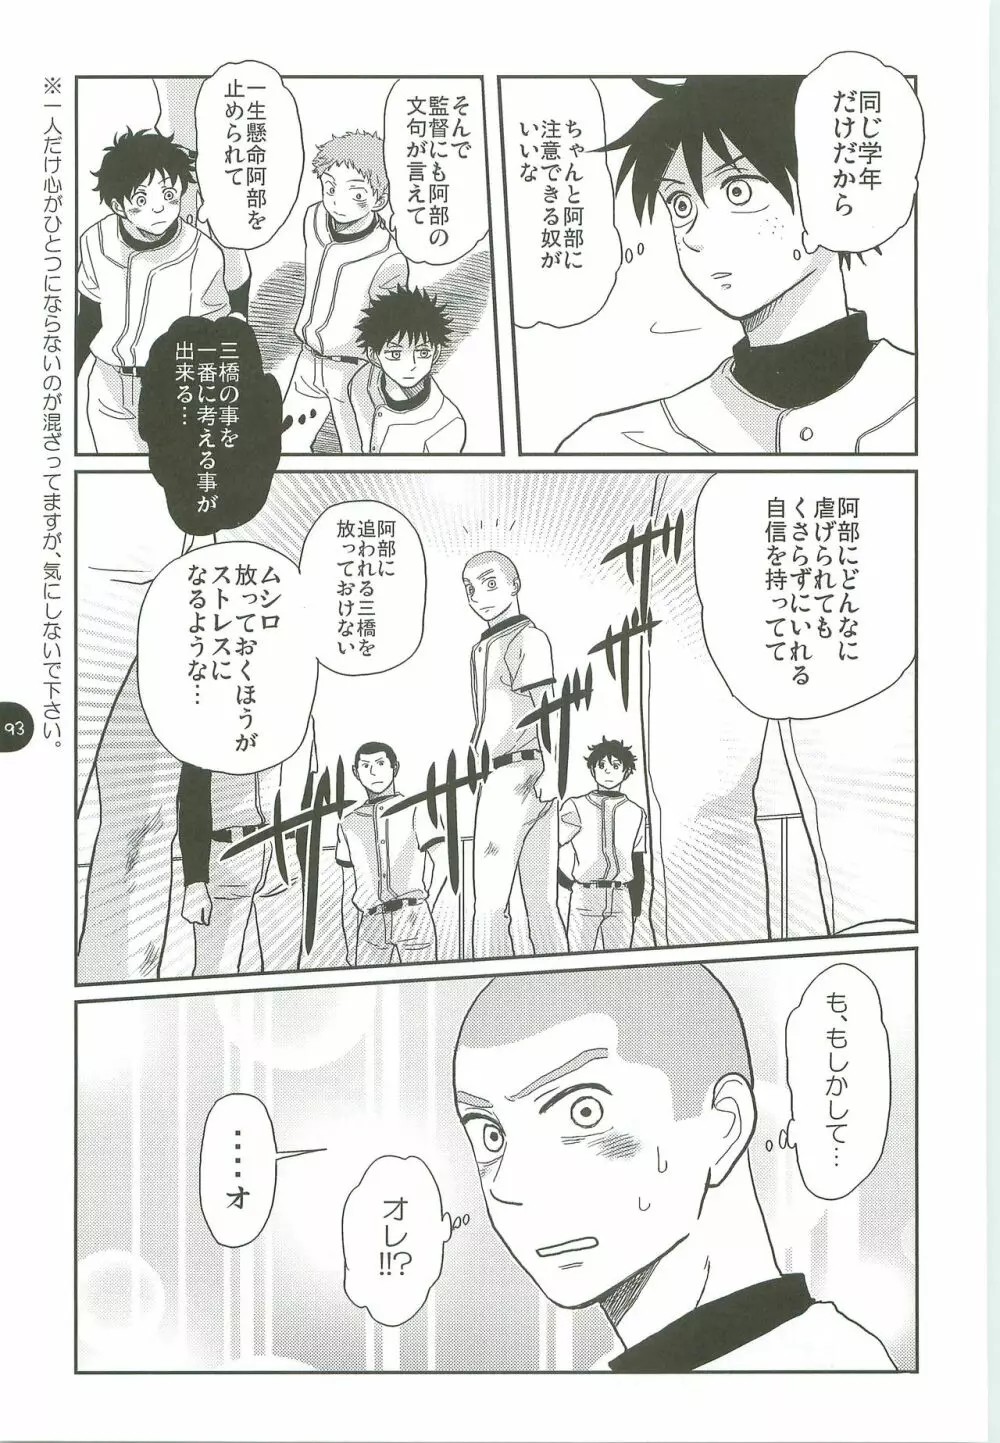 あ部屋のまとめ - page92